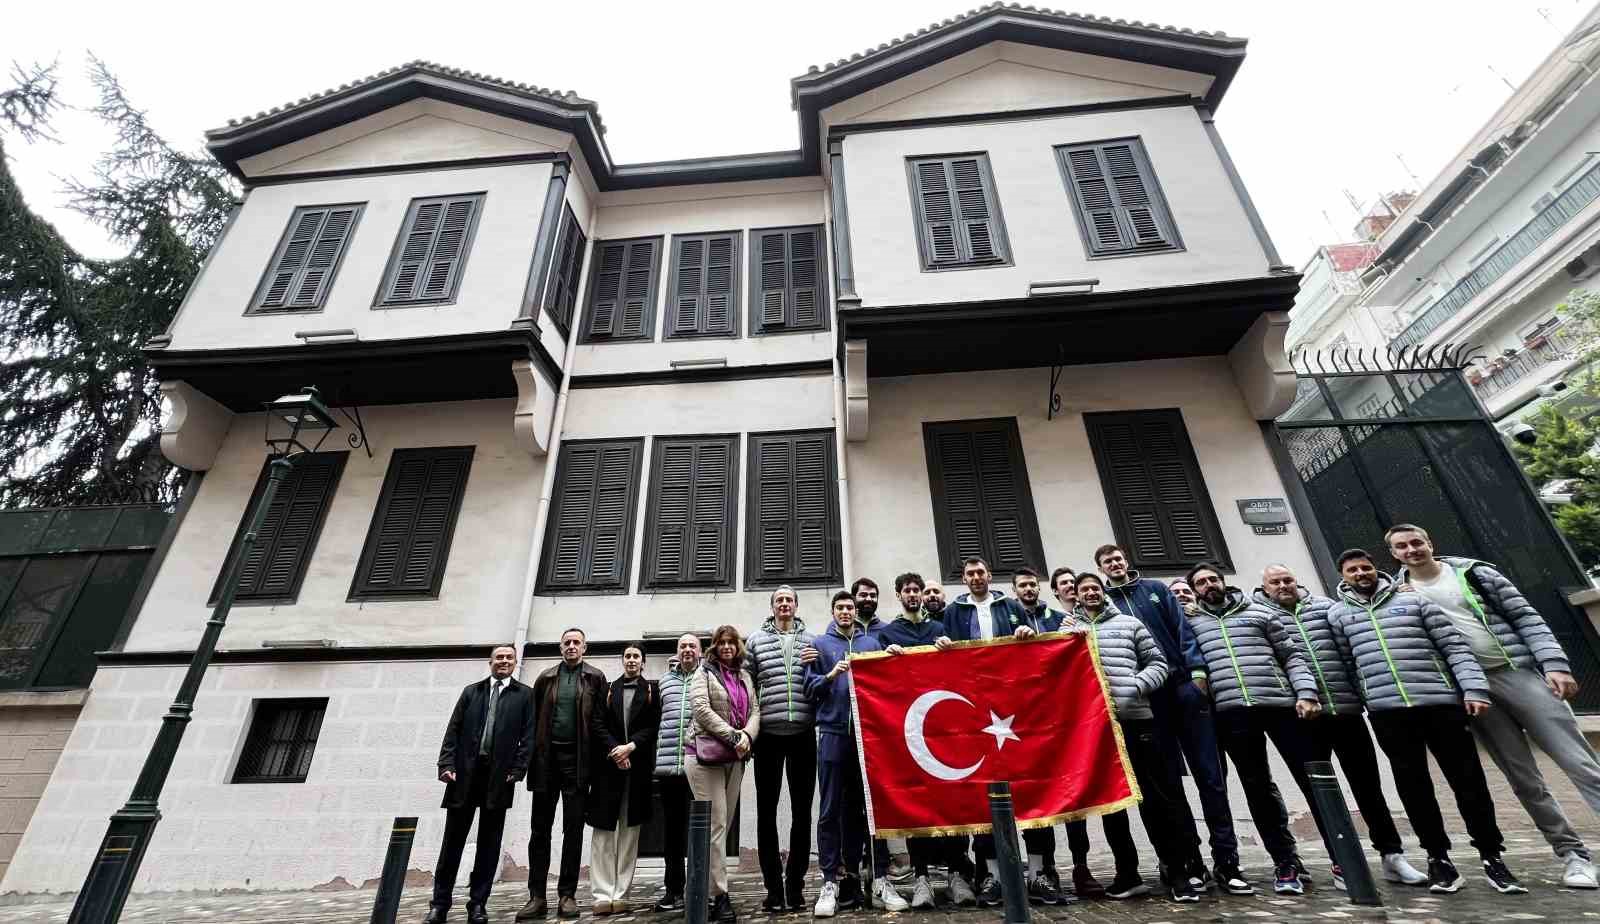 Tofaş Basketbol Takımı, Atatürk’ün evini ziyaret etti